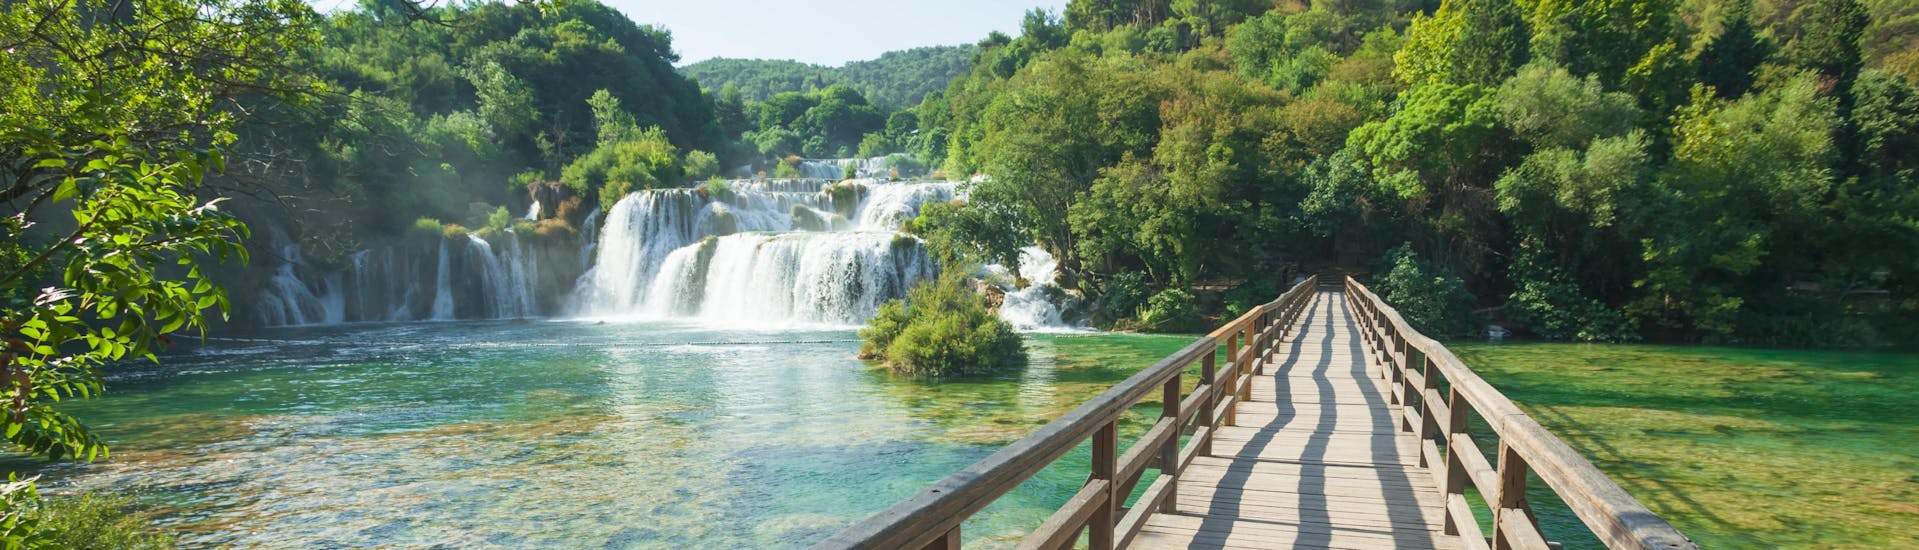 Immagine delle famose cascate del Parco nazionale di Krka, in Croazia.